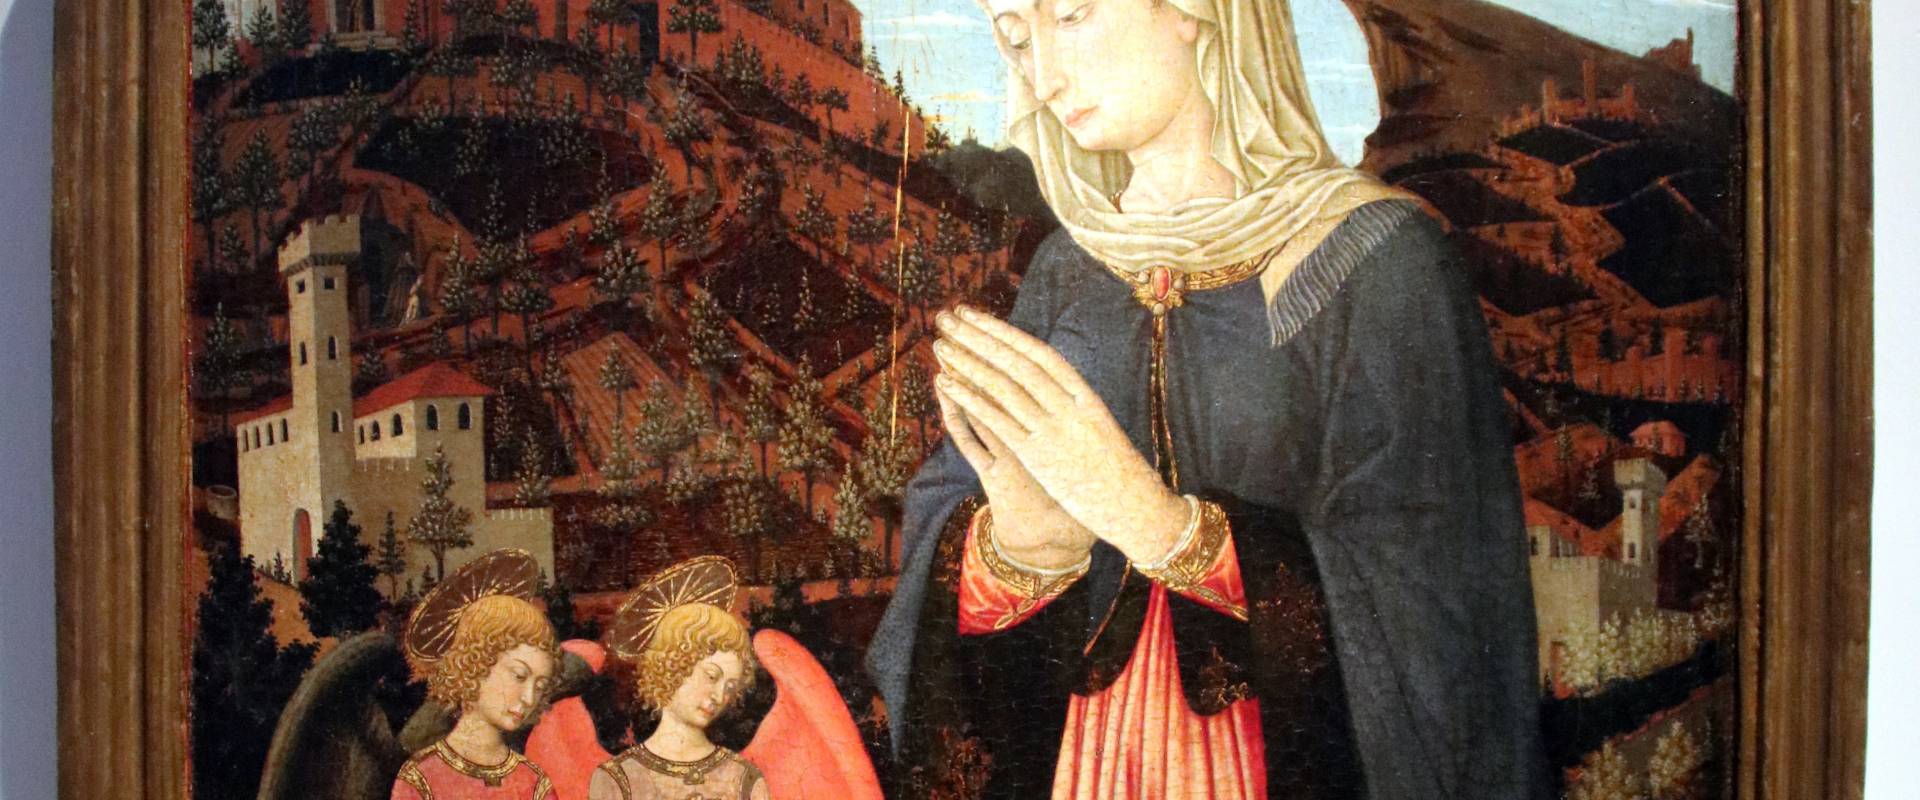 Giovanni Francesco da Rimini, Madonna in adorazione del Bambin Gesù, san Giovannino, due angeli. Padre eterno e angeli, 1460-65 photo by Mongolo1984